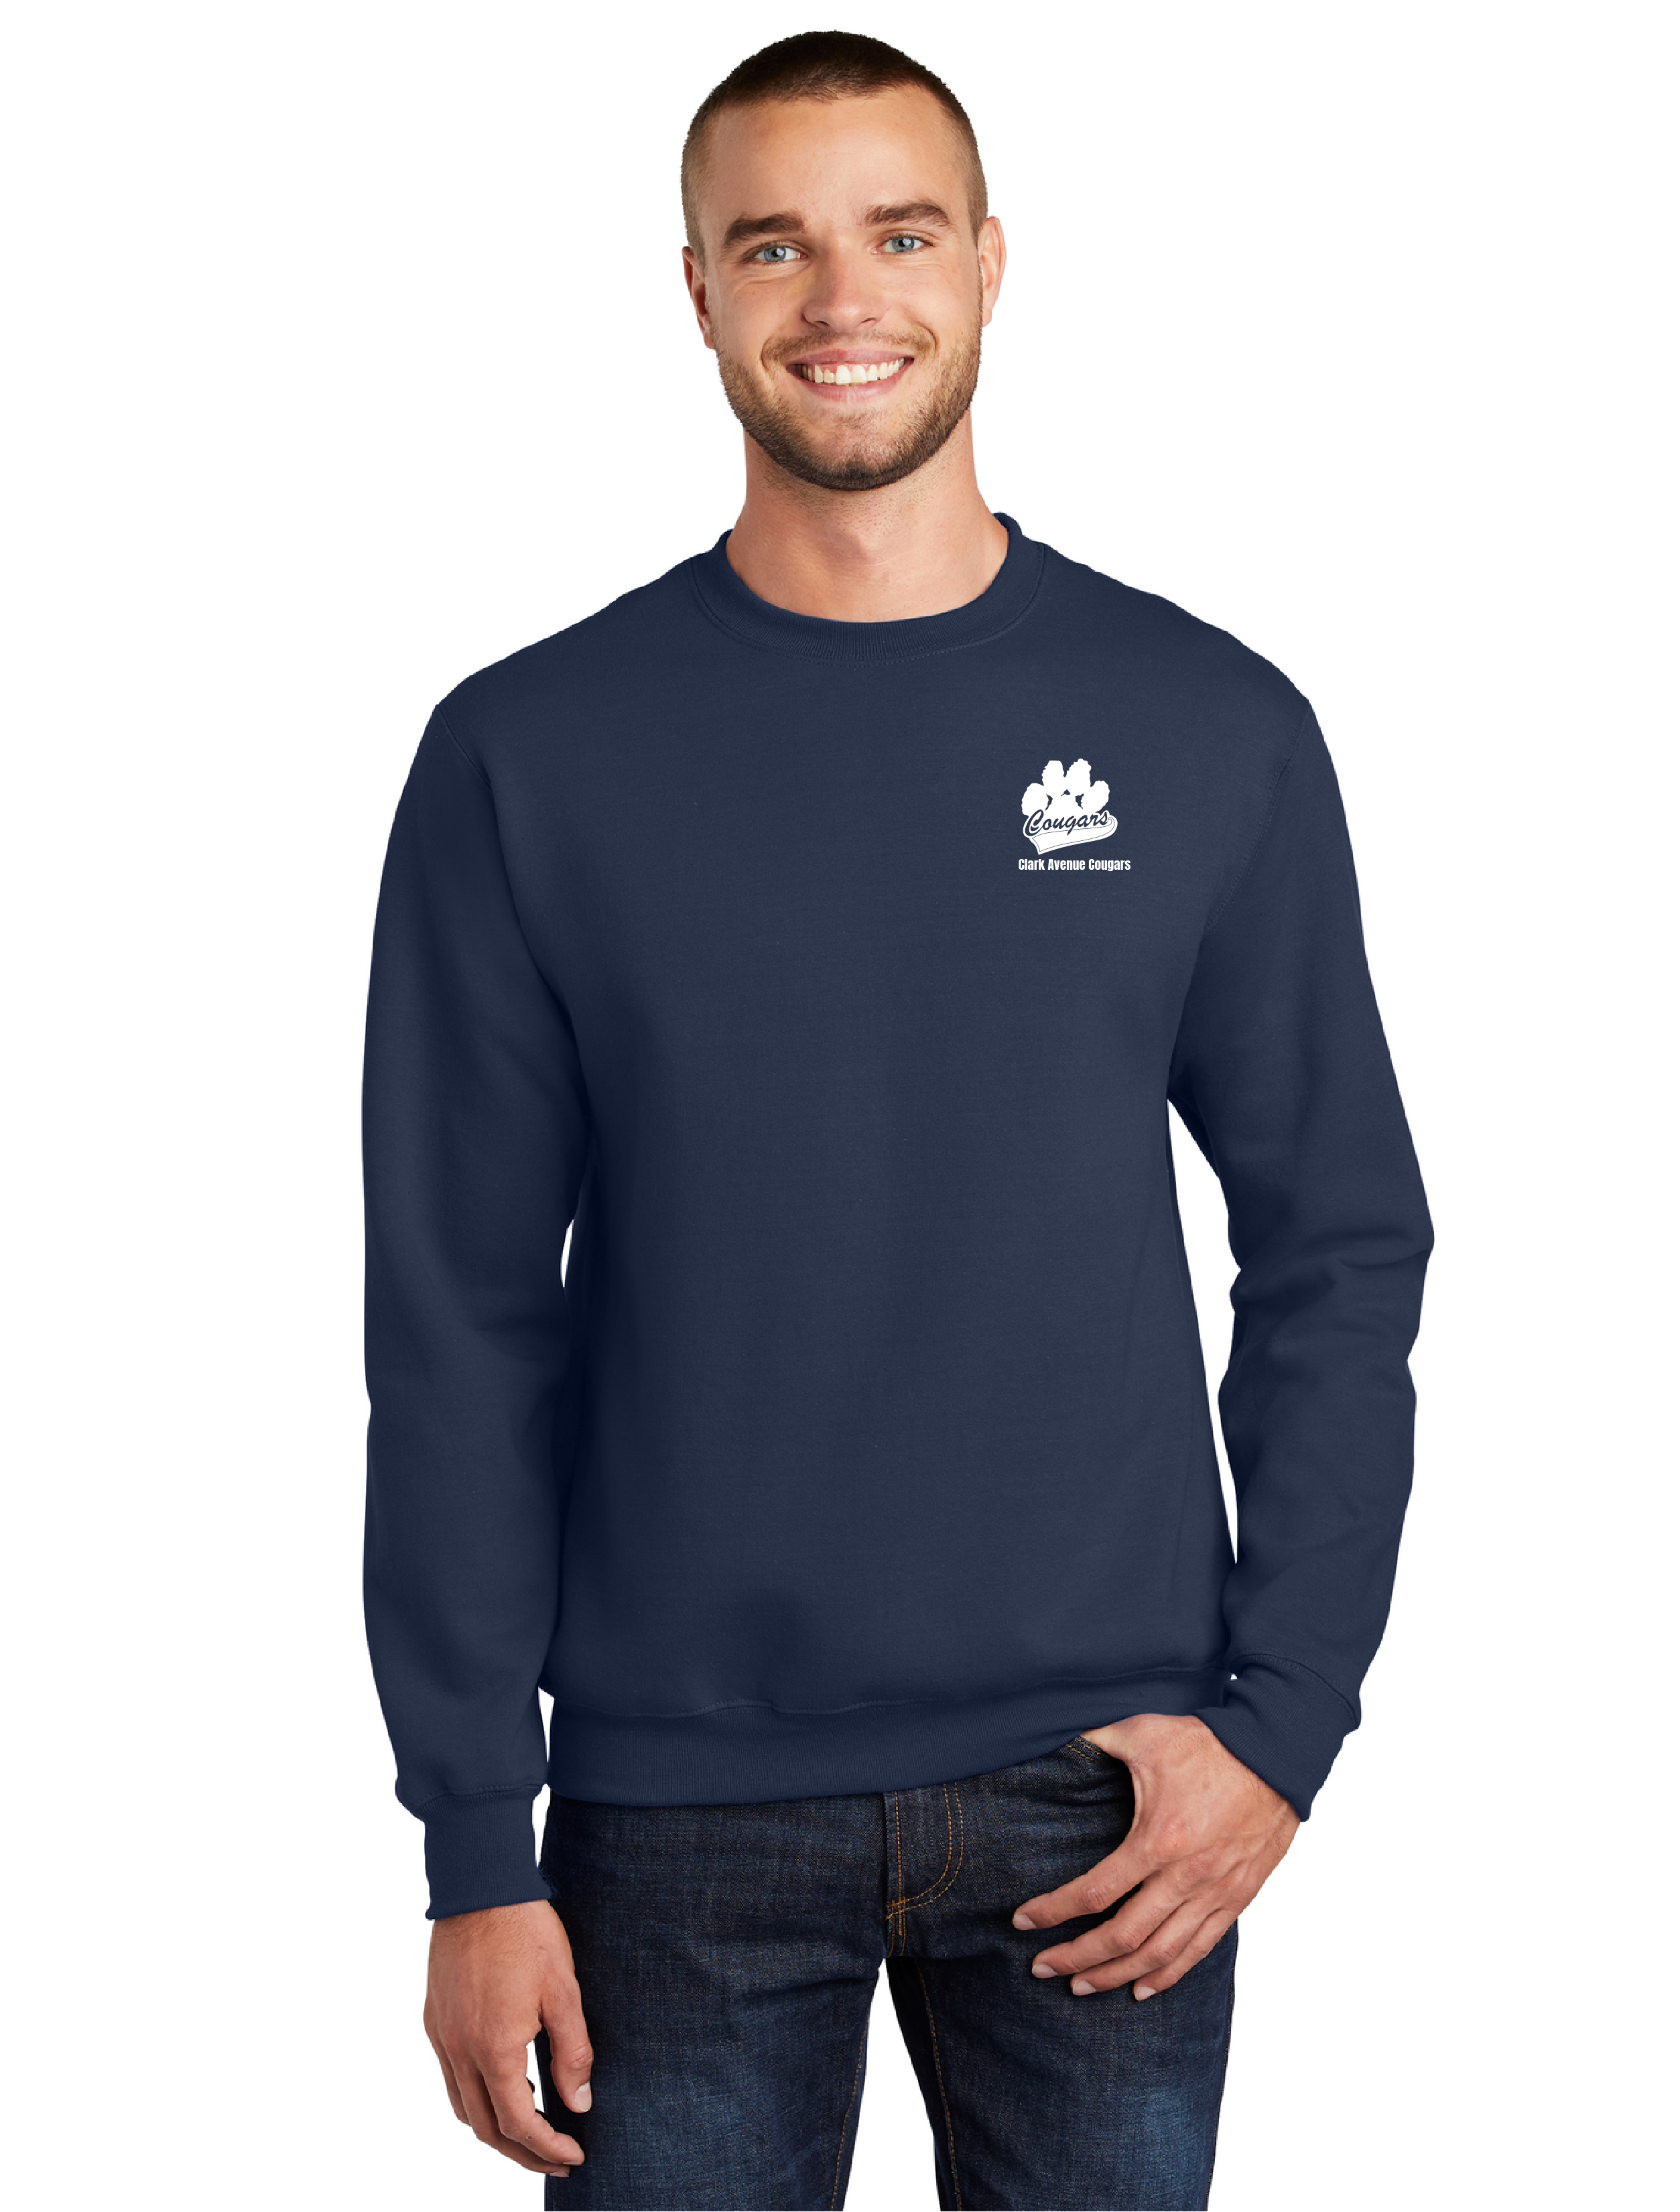 Adult Essential Fleece Crewneck Sweatshirt PC90 Clark Avenue School